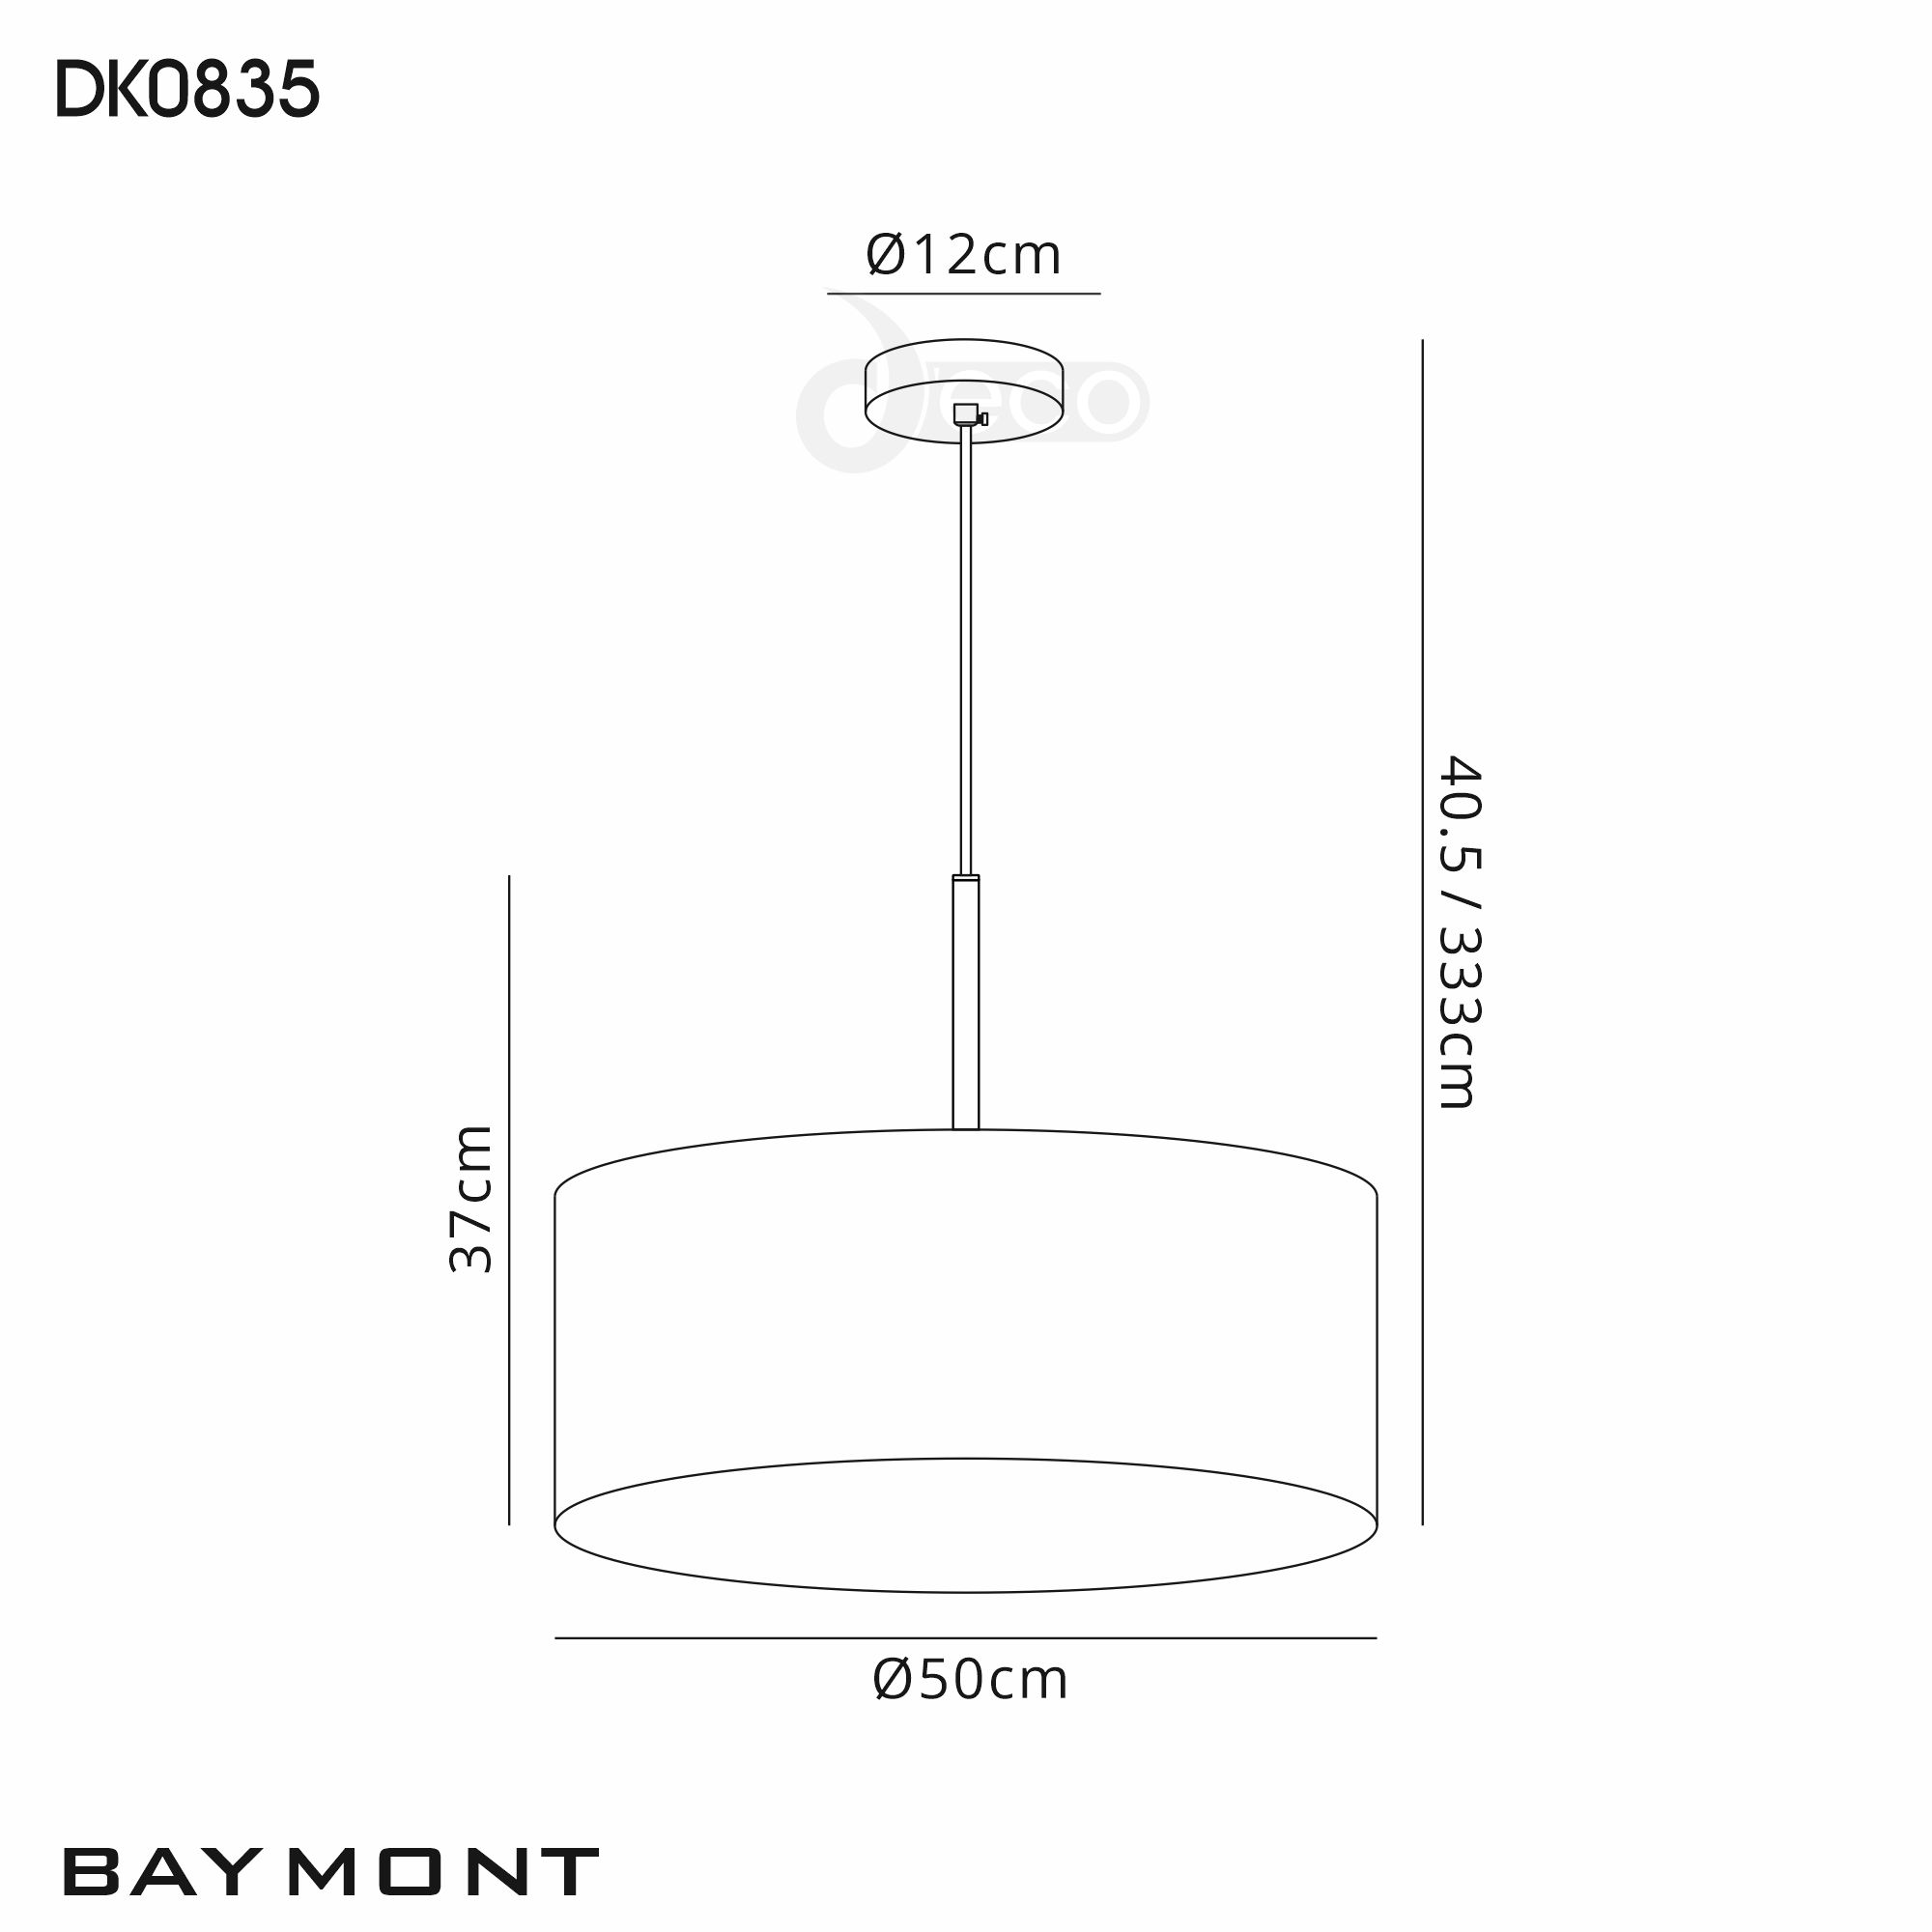 DK0835  Baymont 50cm 3 Light Pendant